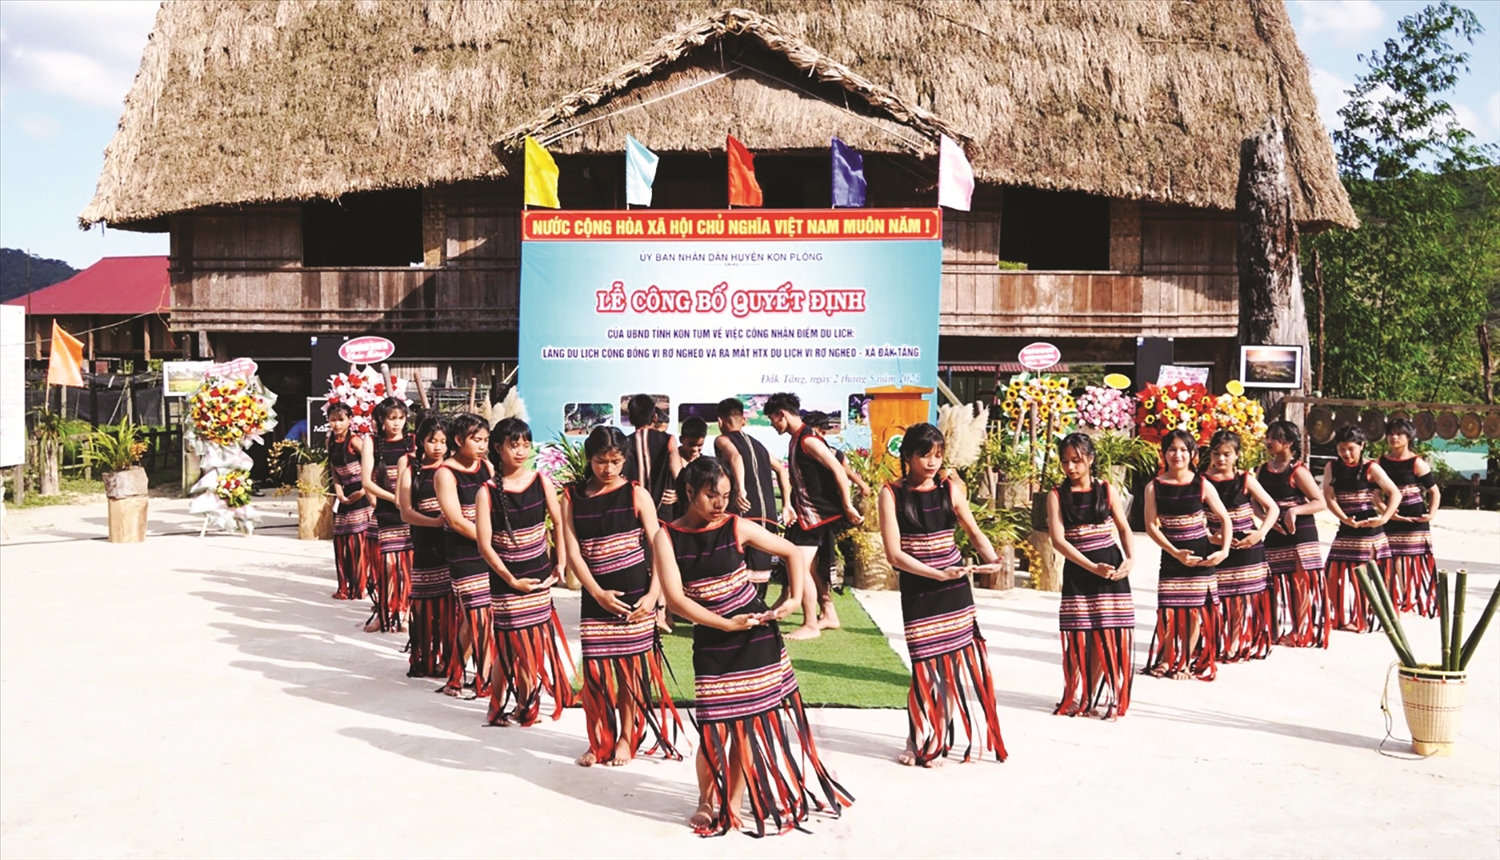 Múa xoang - hoạt động biểu diễn trong các lễ hội, sự kiện quan trọng của đồng bào địa phương